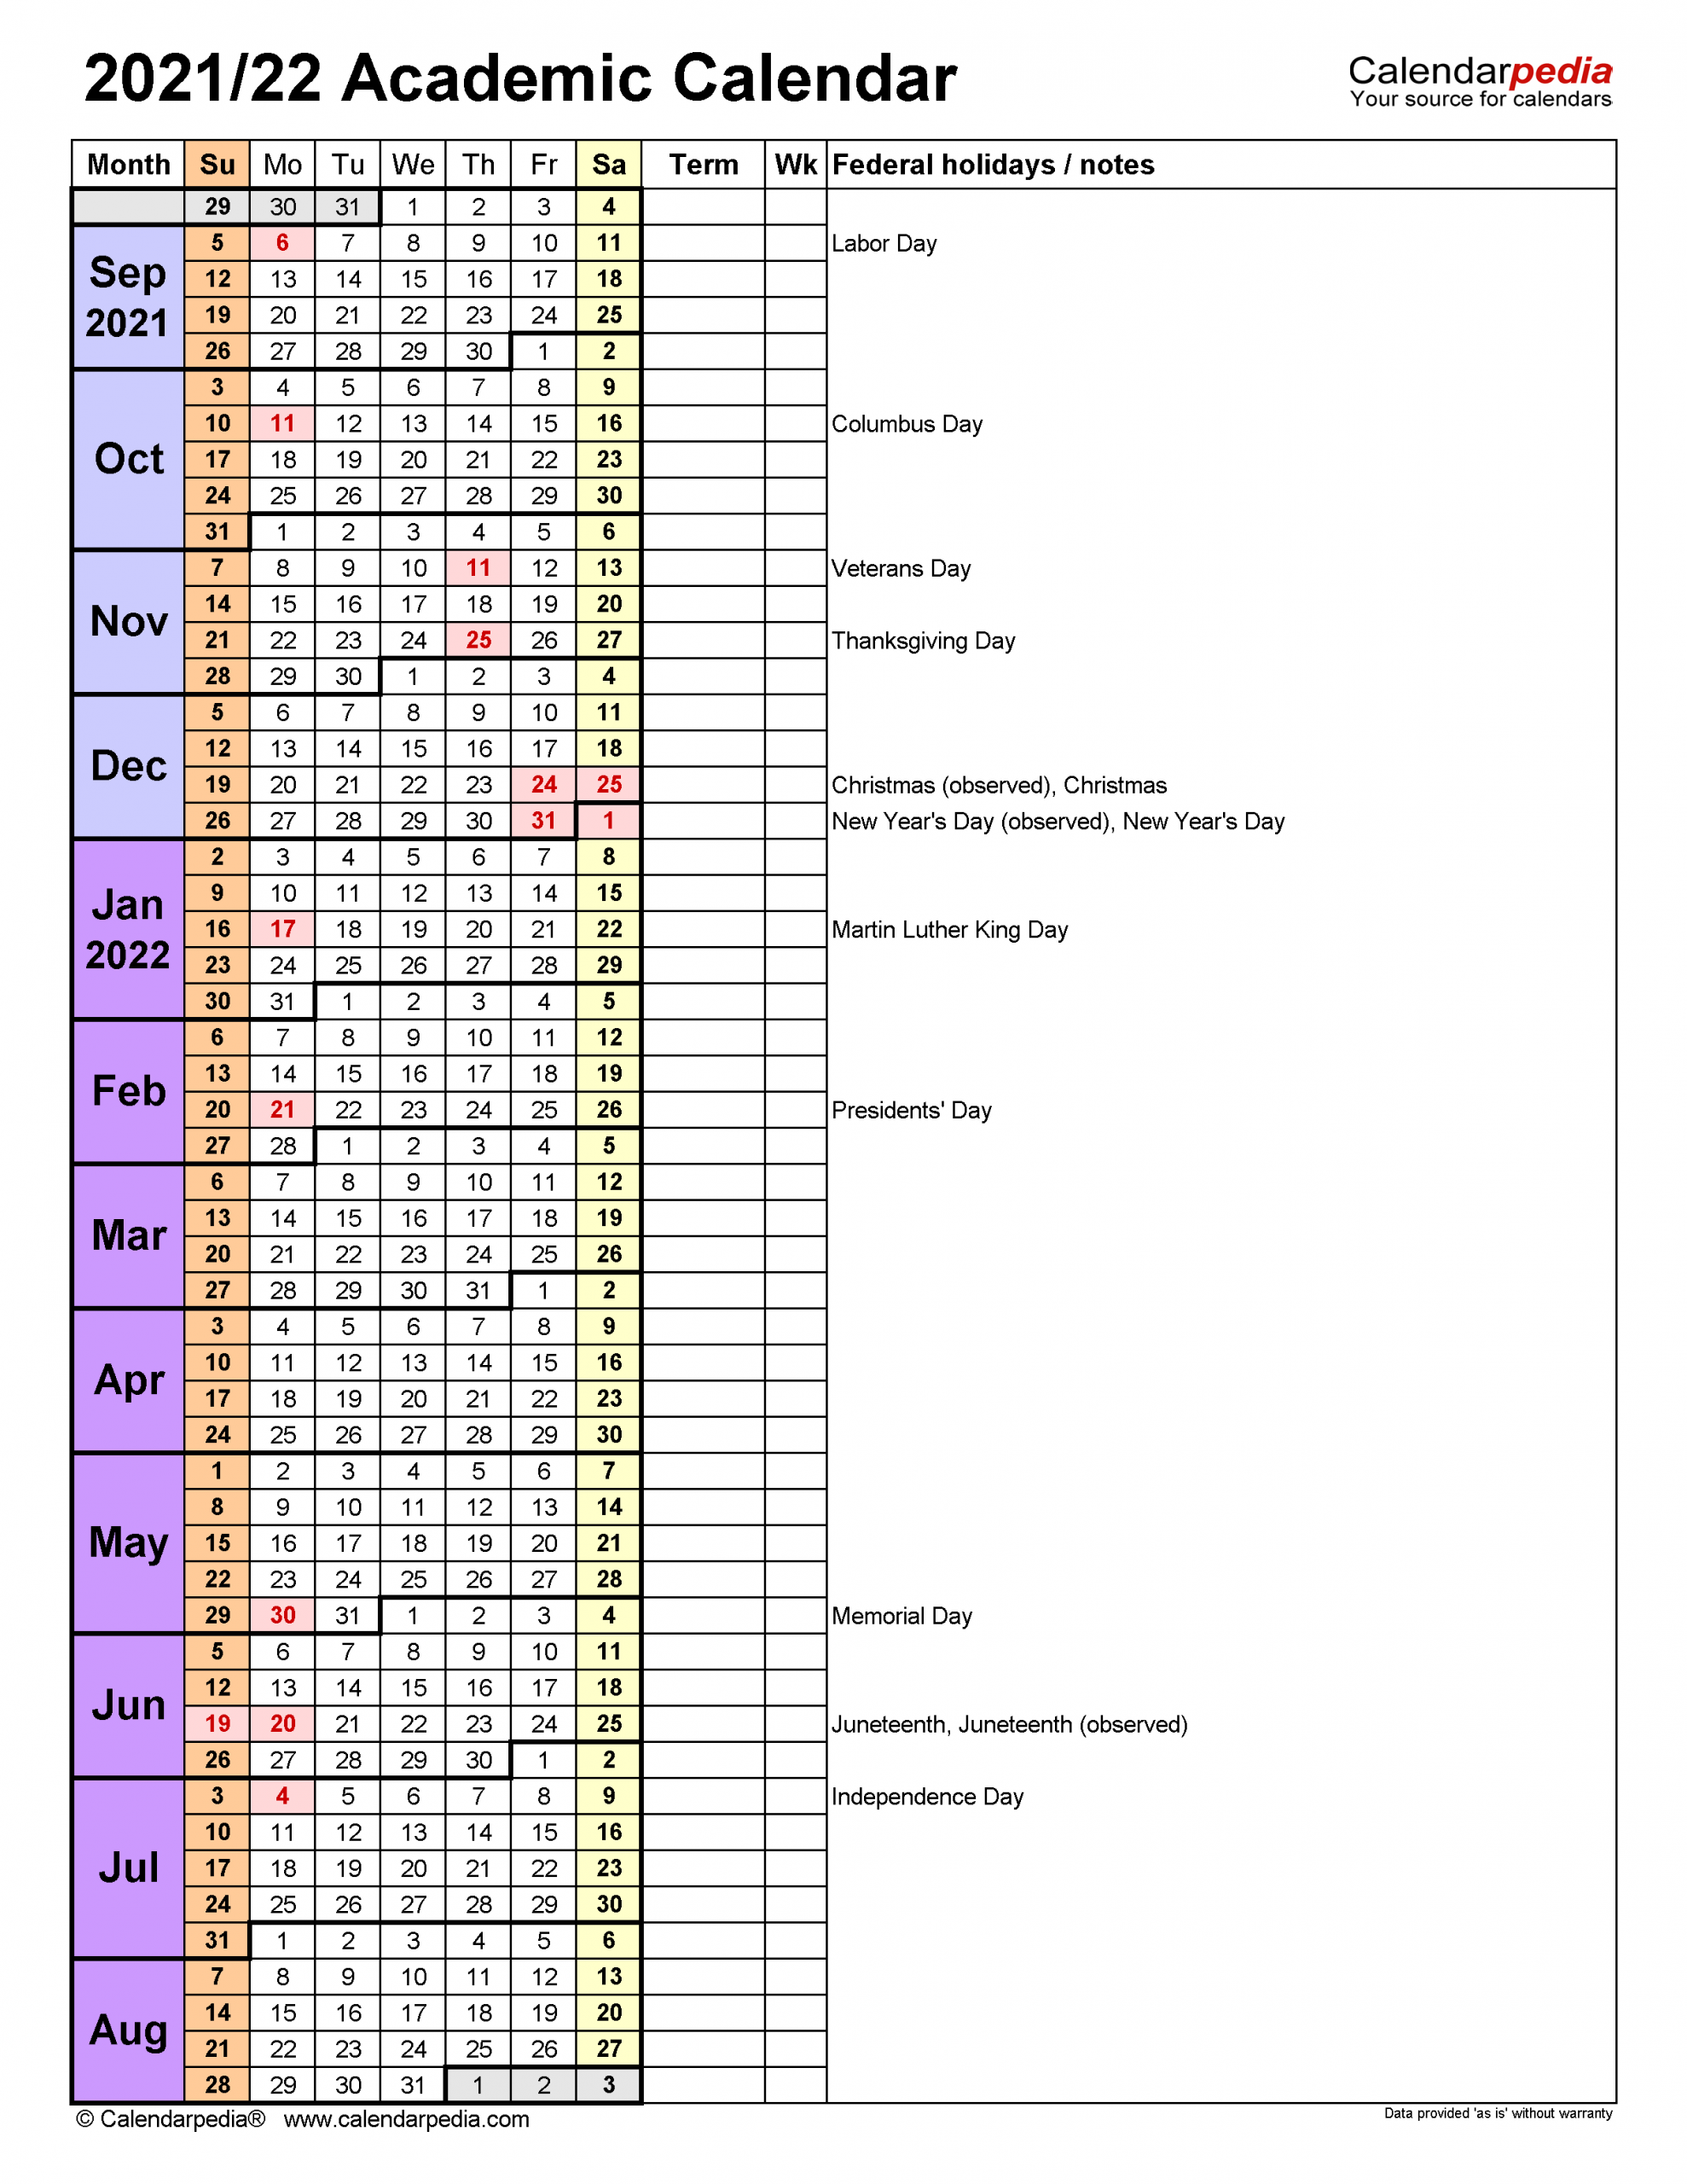 Academic Calendar Spring 2022 - Printable Calendar 2022